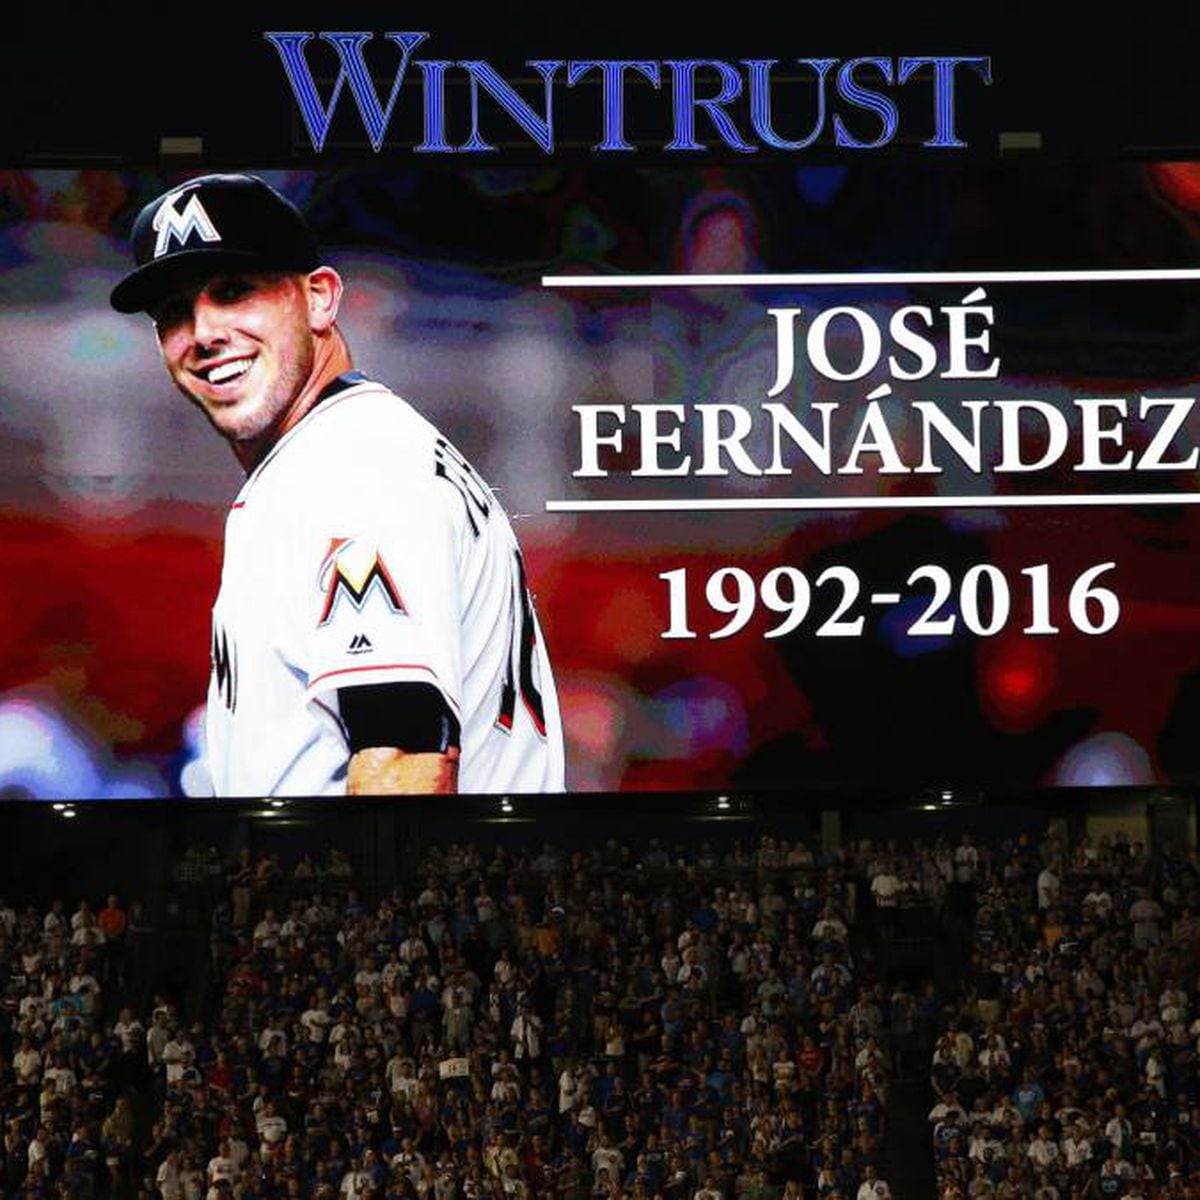 2013 MLB All-Star Game: Jose Fernandez throws scoreless inning